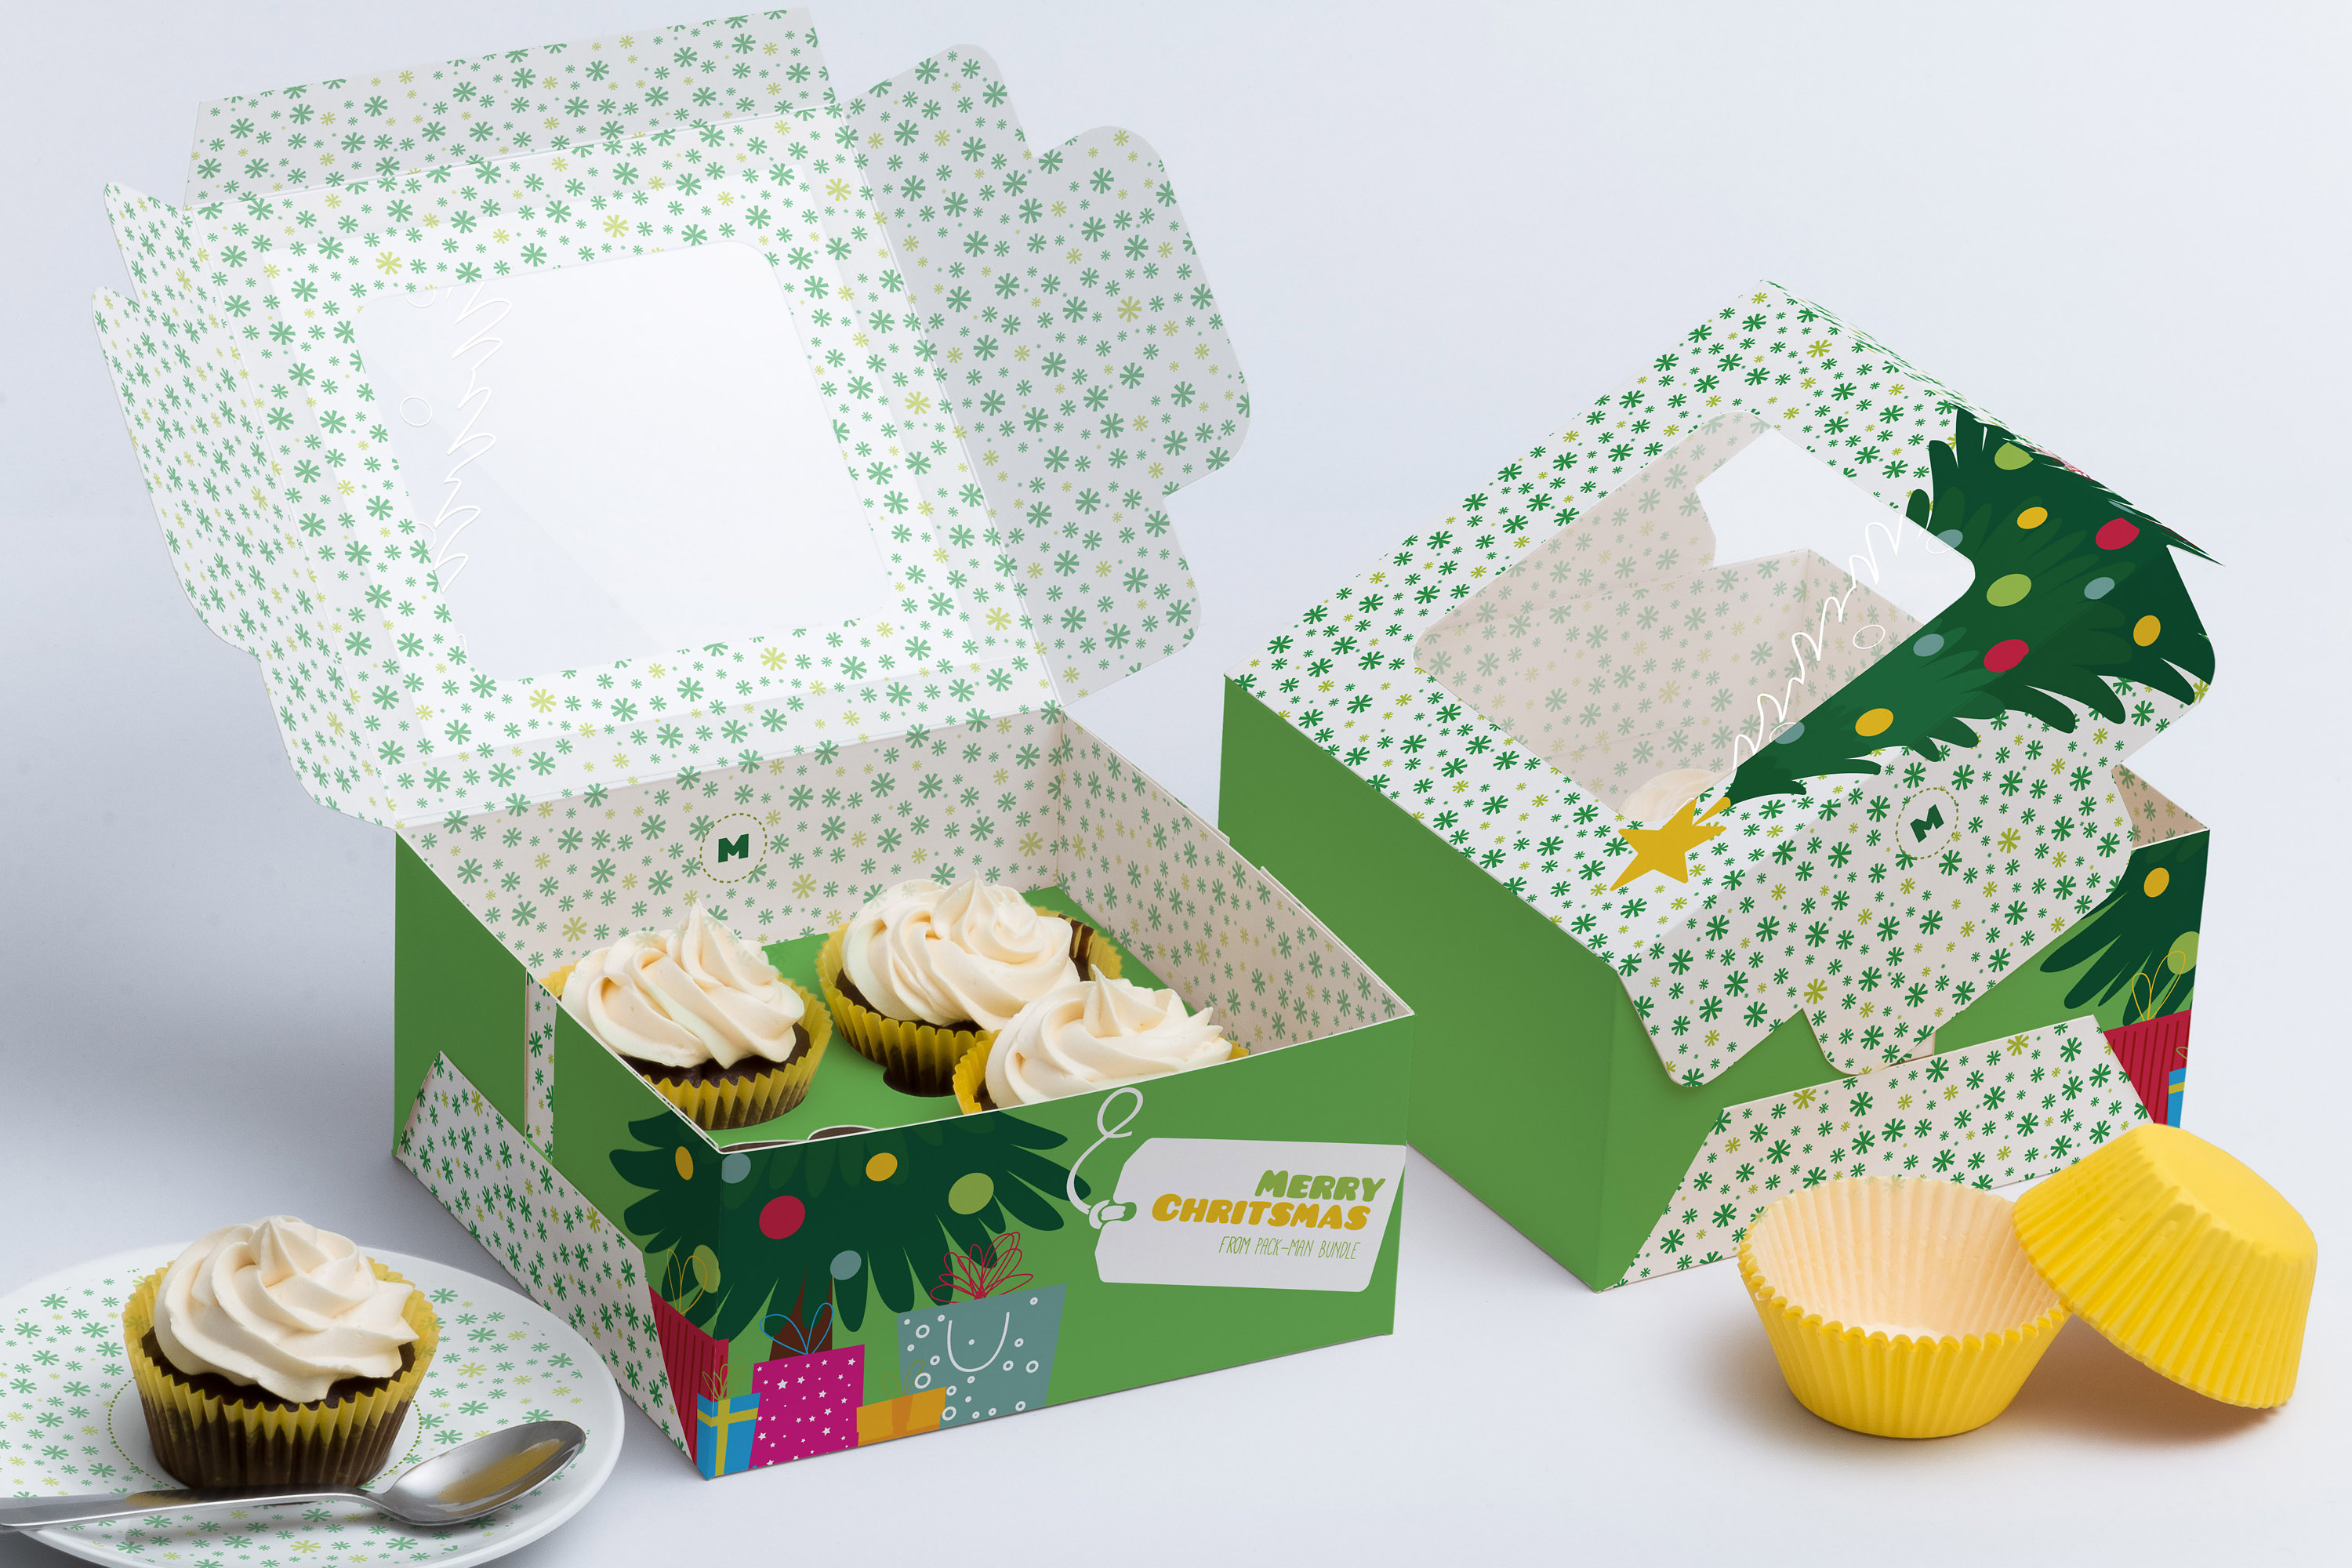 四只装纸杯蛋糕礼盒包装外观设计样机 Four Cupcake Box Mockup 01插图